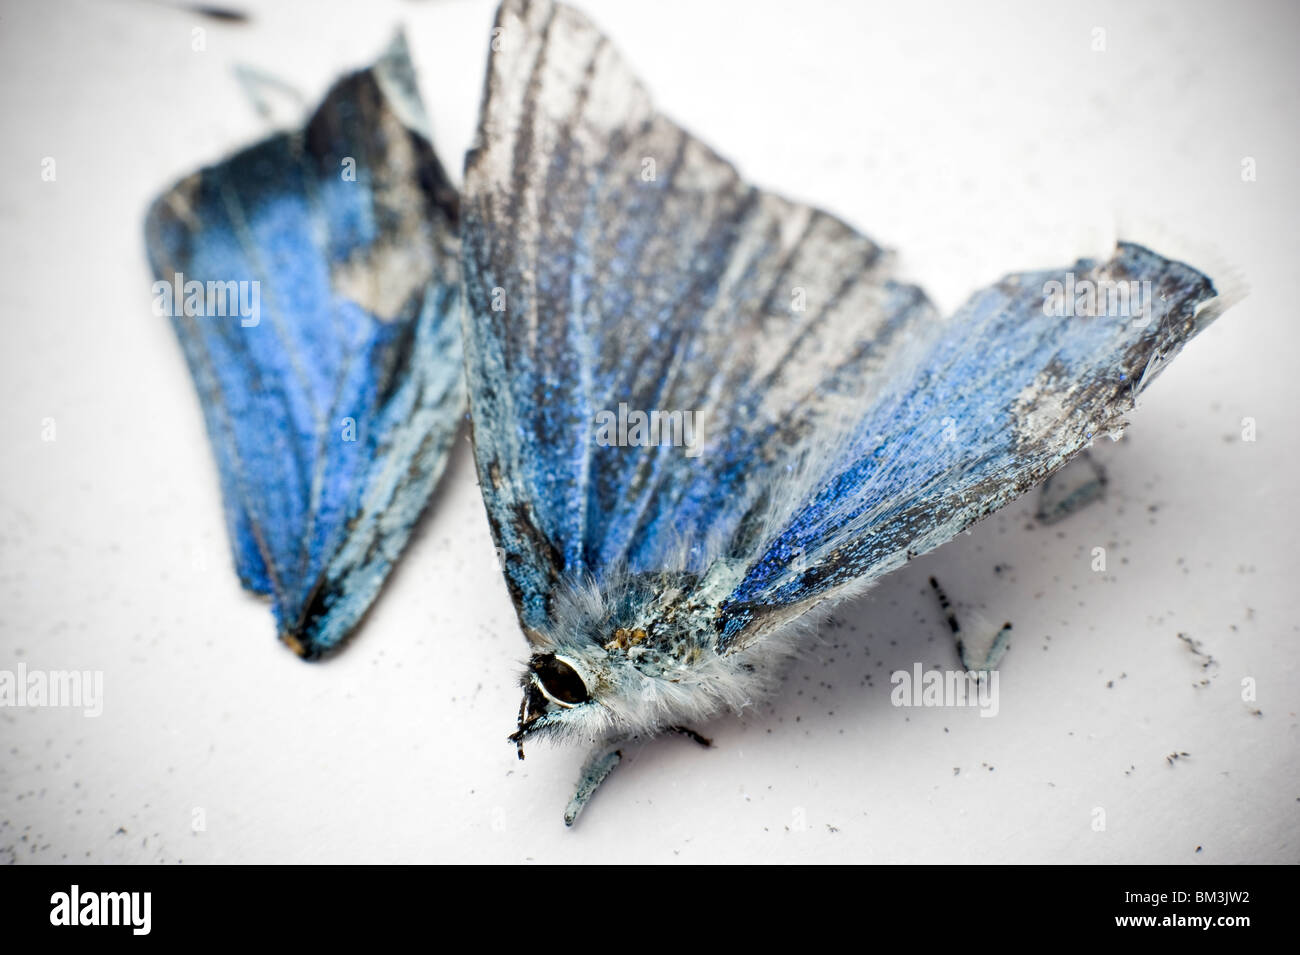 Muertos y roto 'Small' mariposa azul Foto de stock